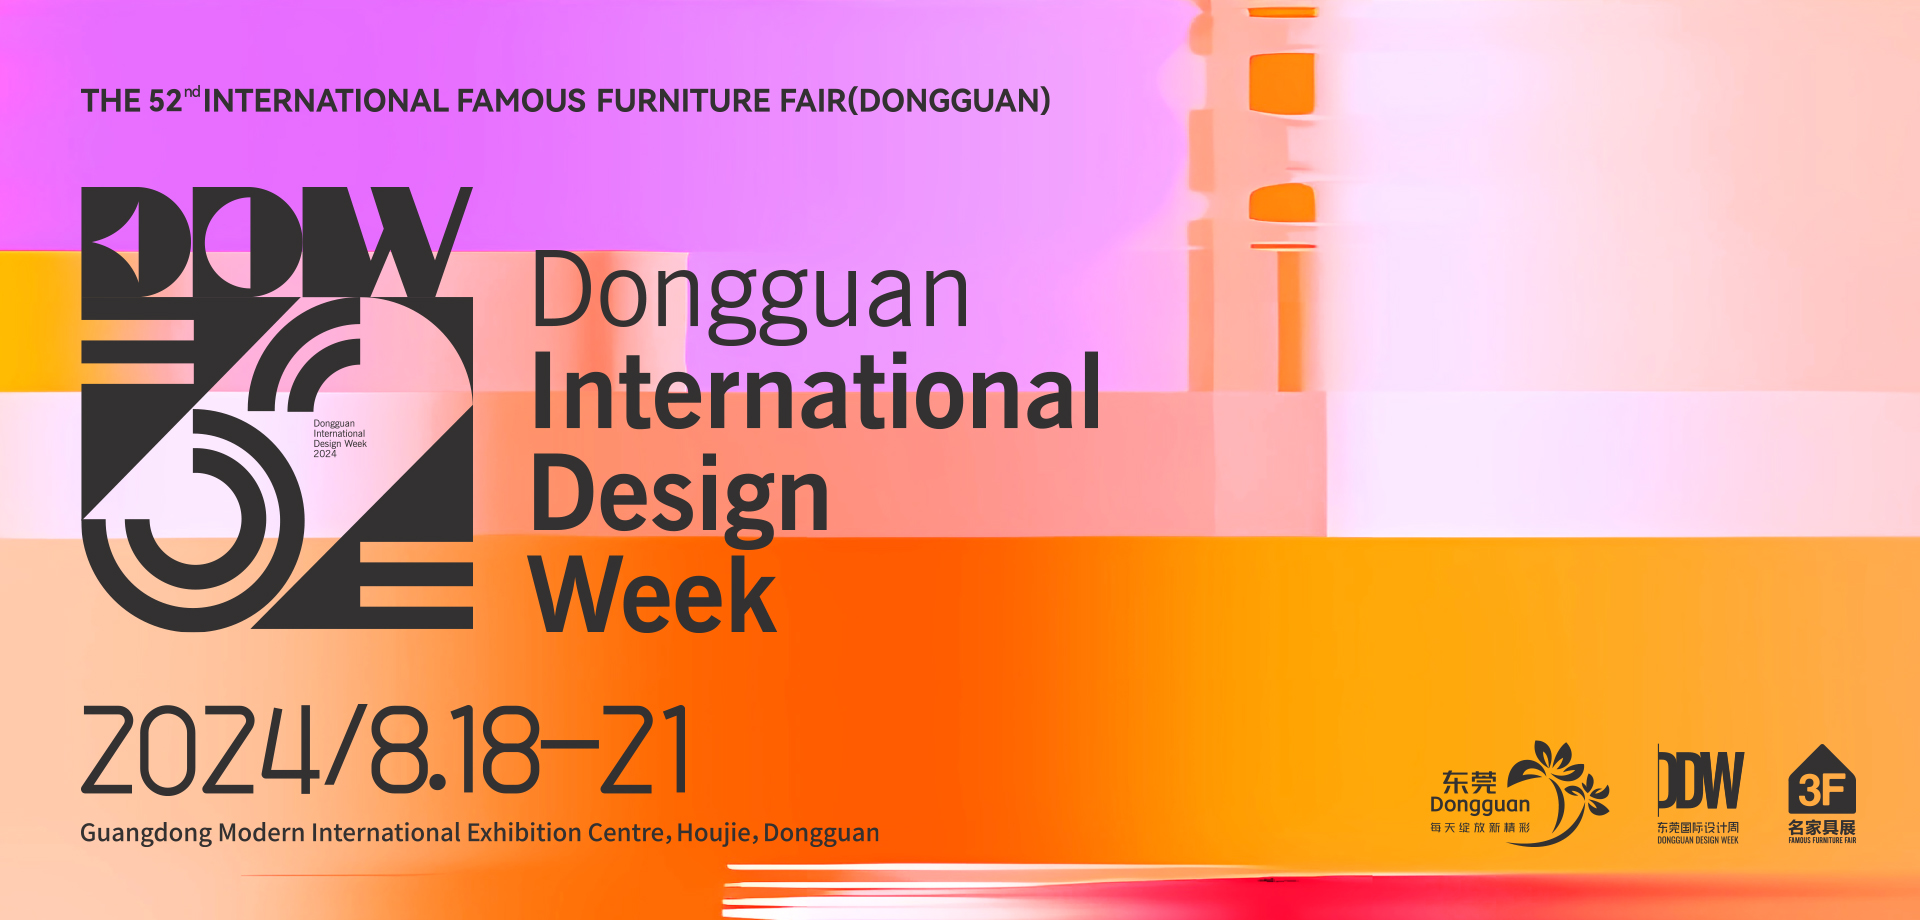 Dongguan International Design Week